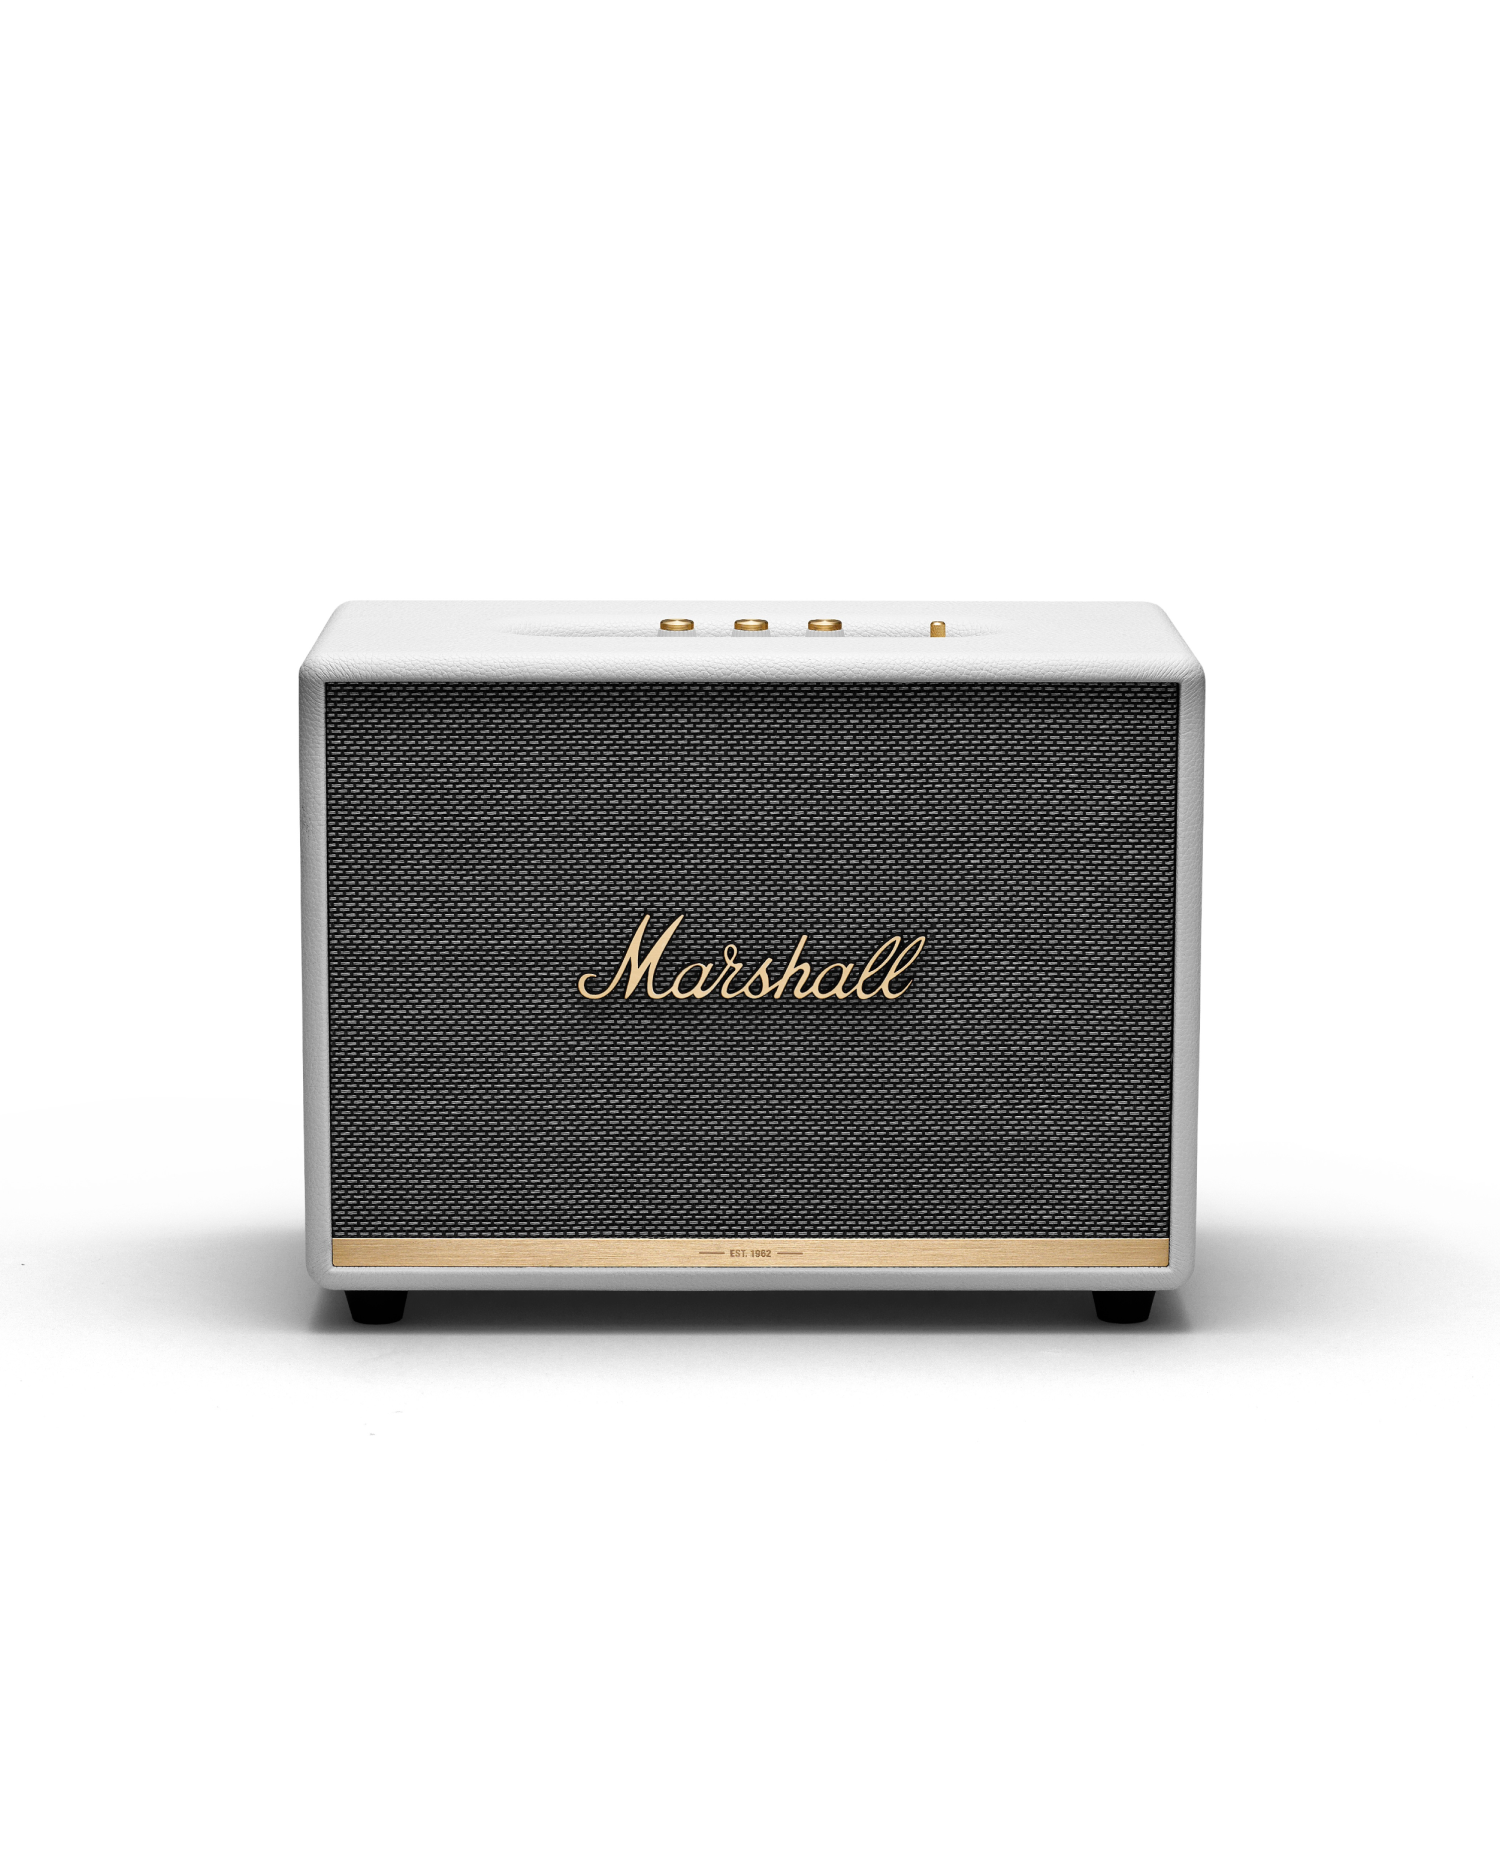 Marshall Woburn II Bluetooth Speaker – Bealtag